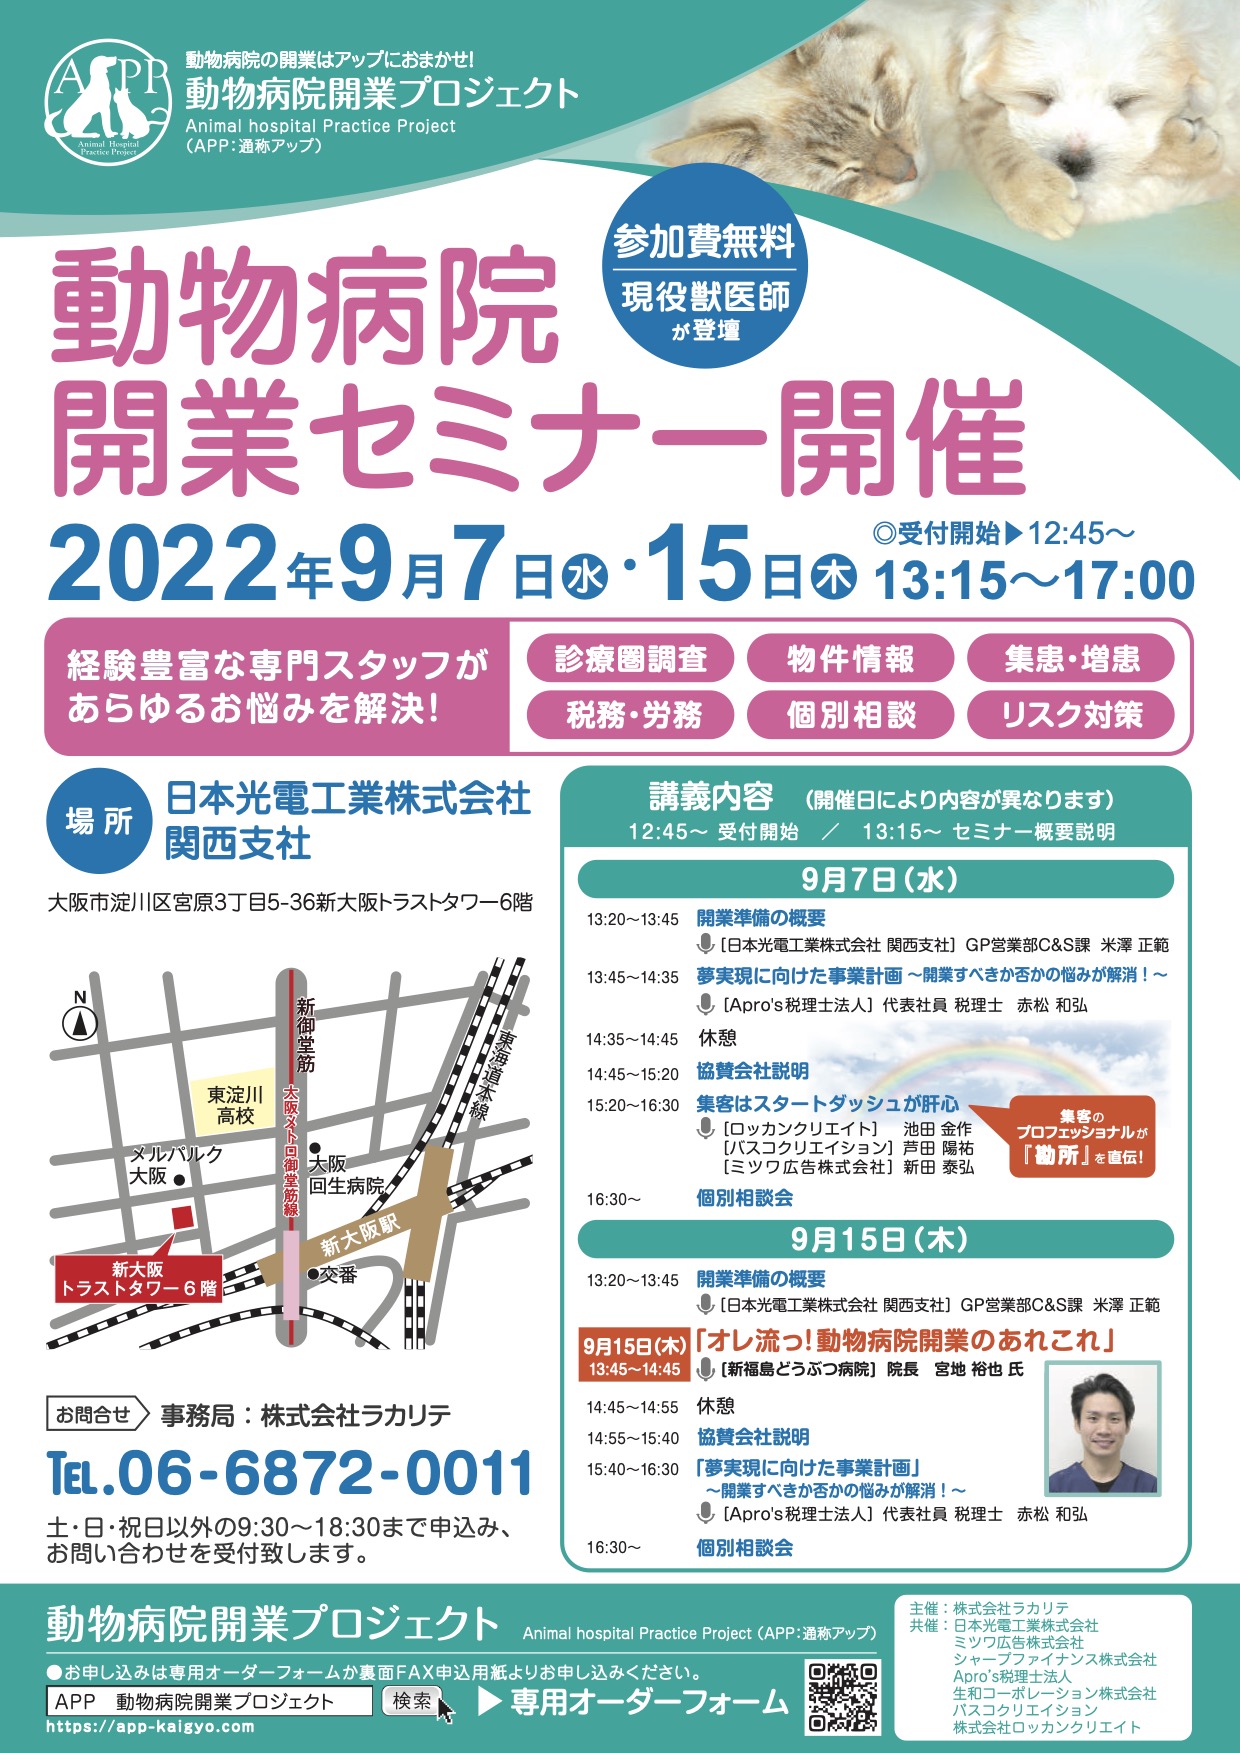 『【大阪開催】動物病院開業セミナー開催（2022年9月7日・15日）のお知らせ』のチラシ画像